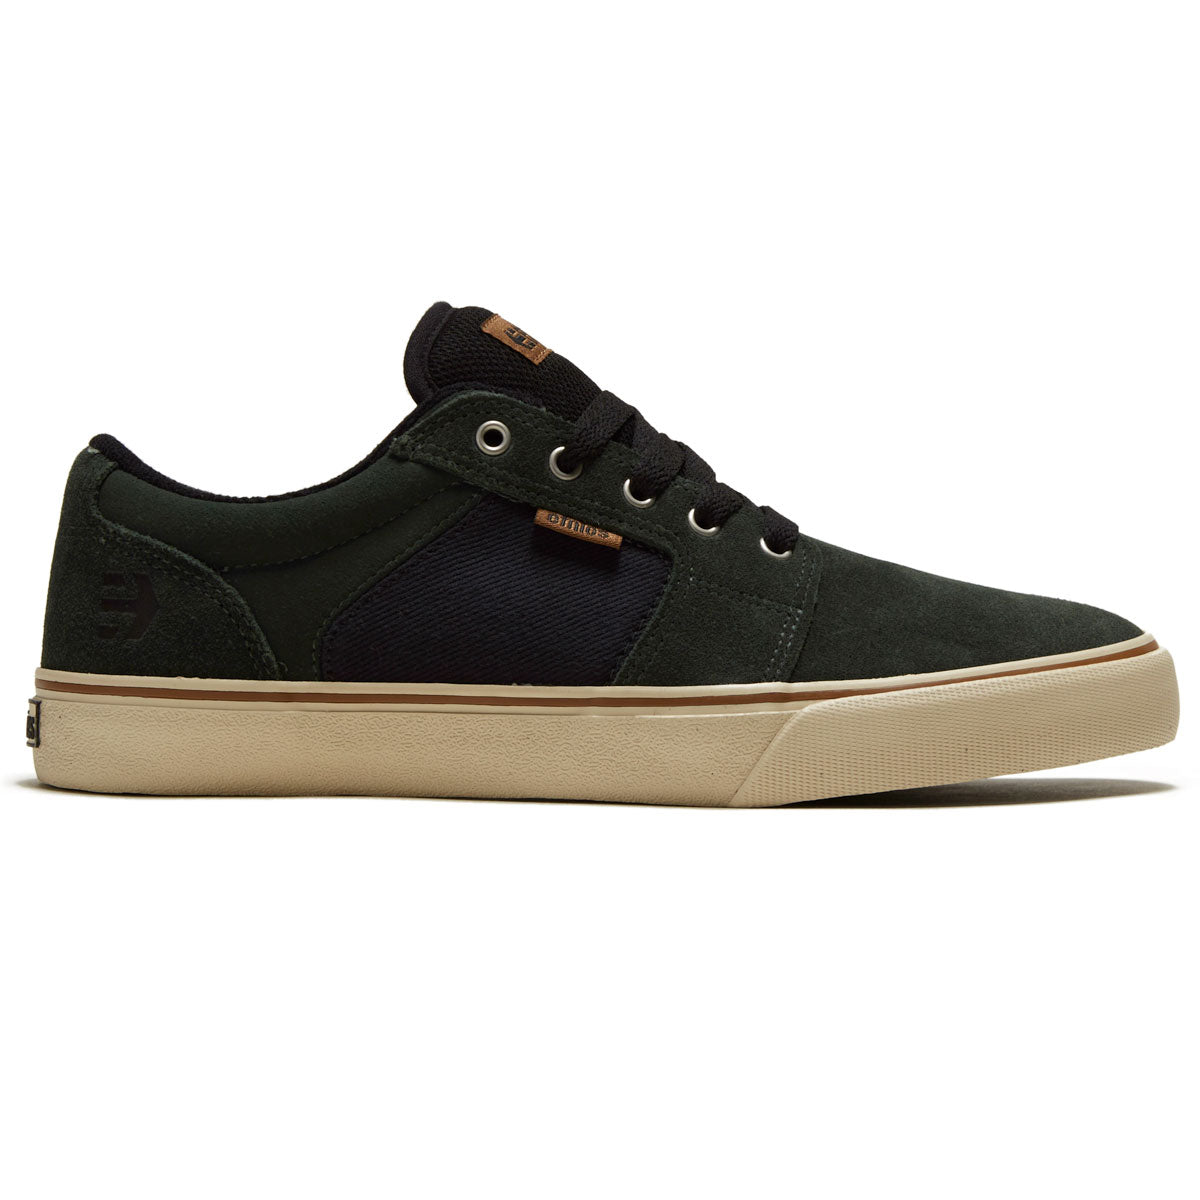 Etnies Barge Ls Shoes - Green/Black image 1